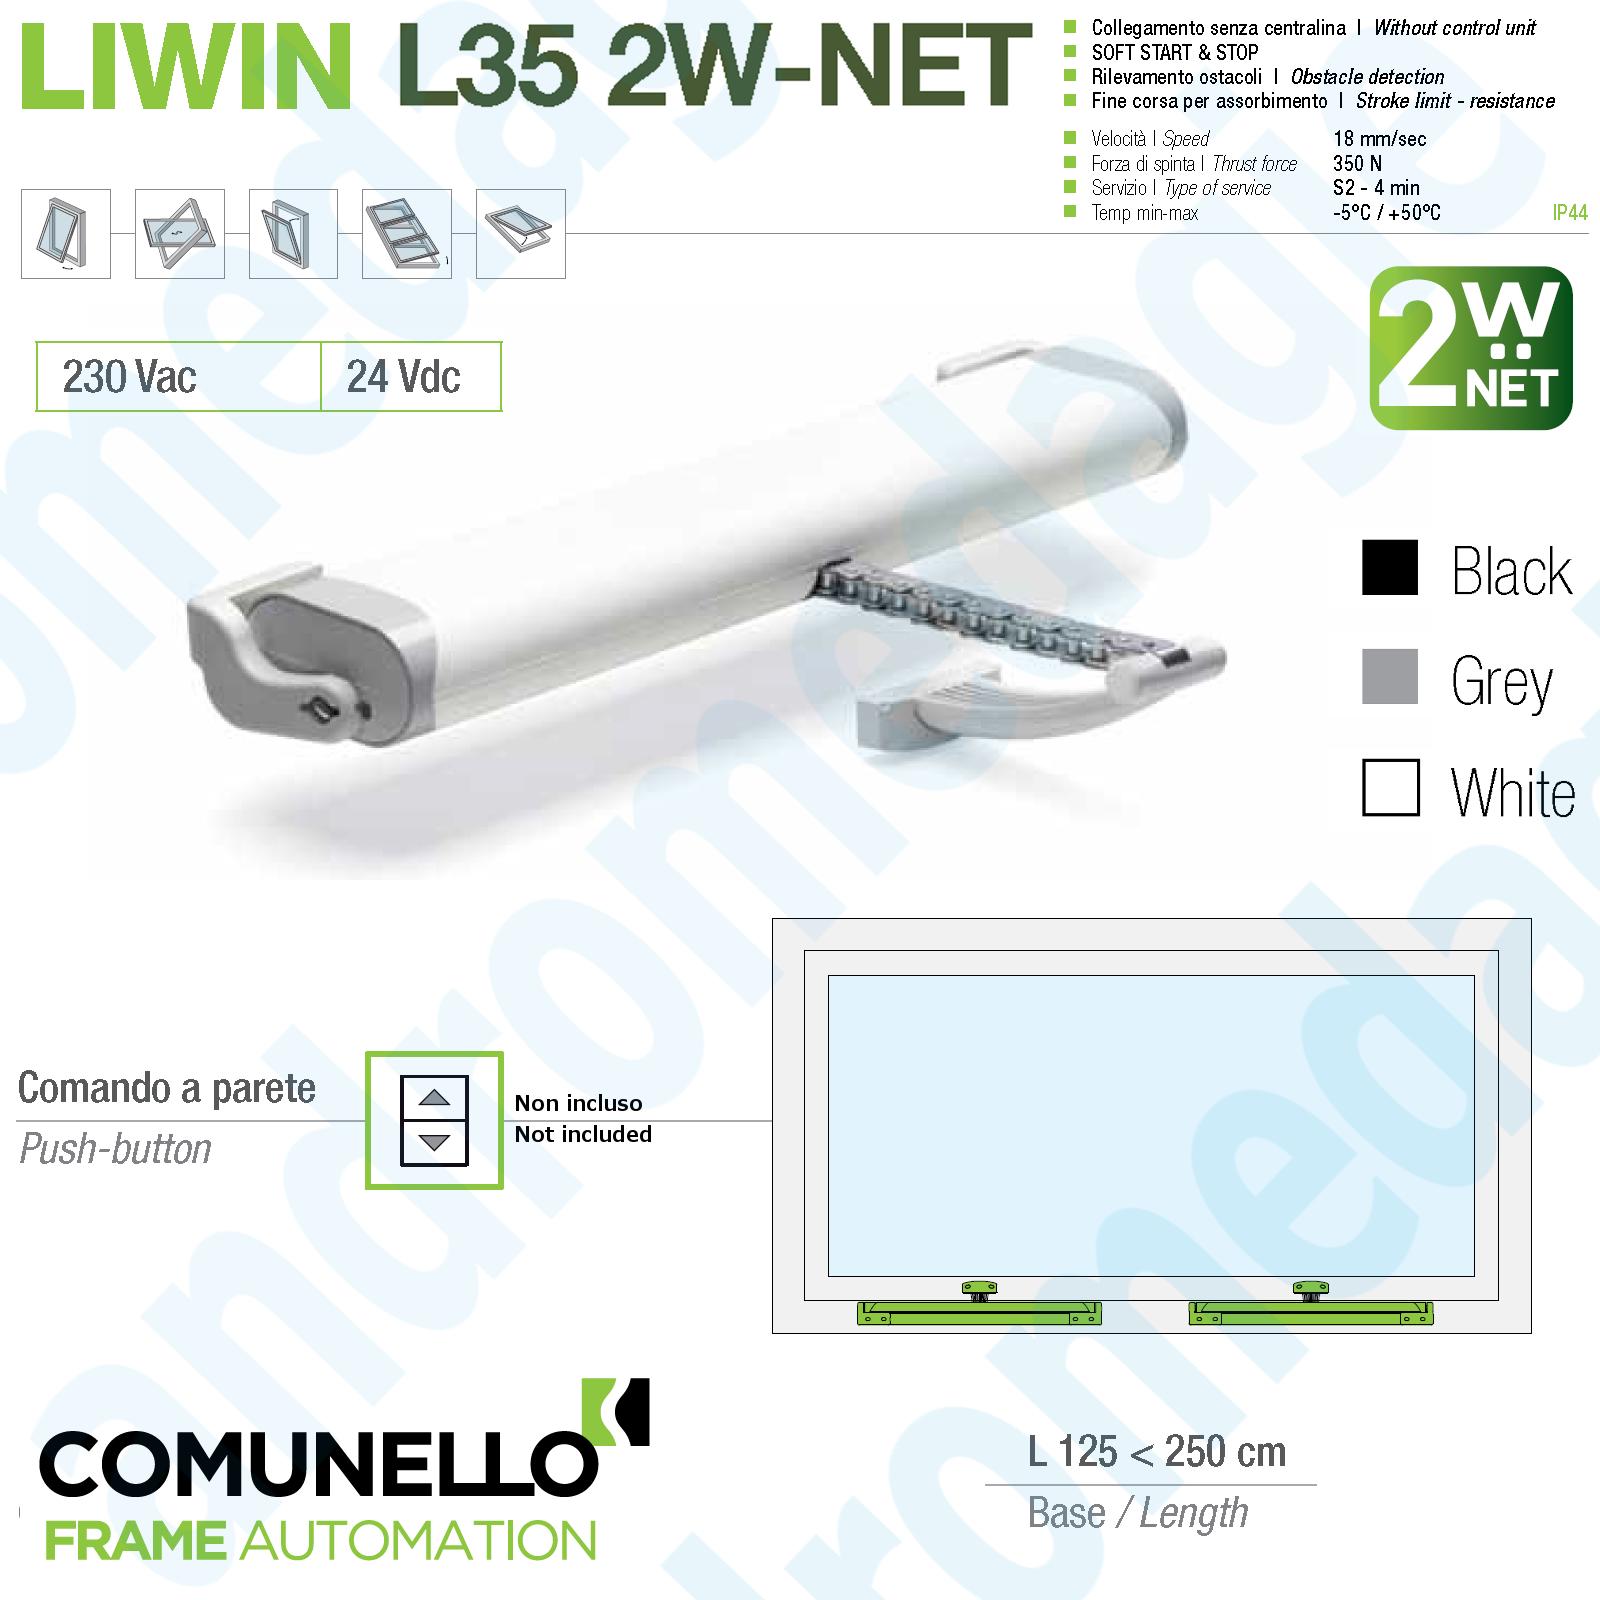 LIWIN 2W-NET 350N